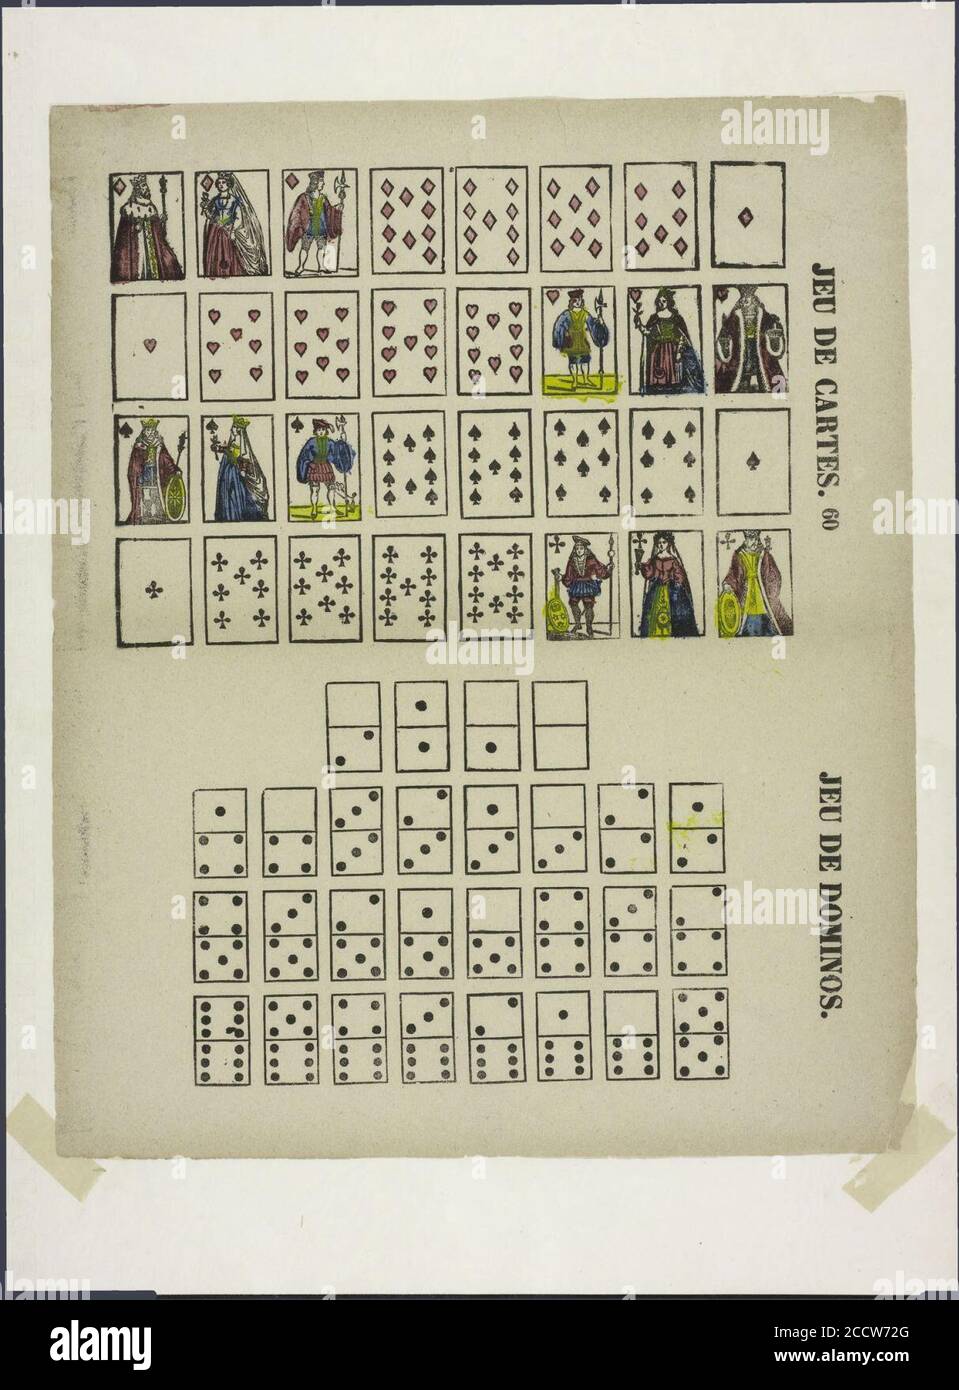 Jeu de cartes-catchpenny Print-SMC K 0081. Stockfoto